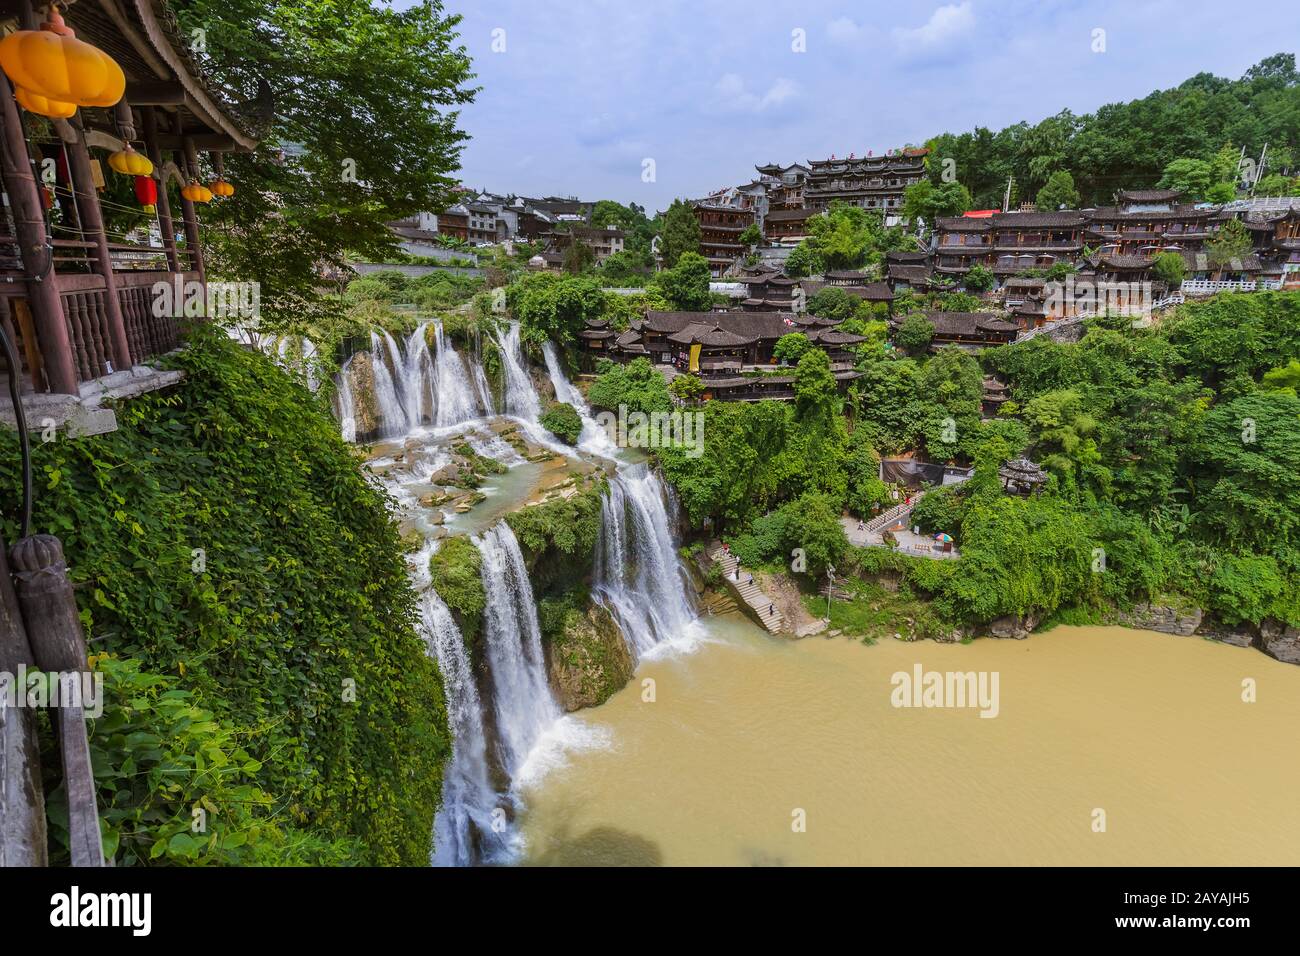 Furong, China - May 29, 2018: Furong ancient village and waterfall in Hunan Stock Photo